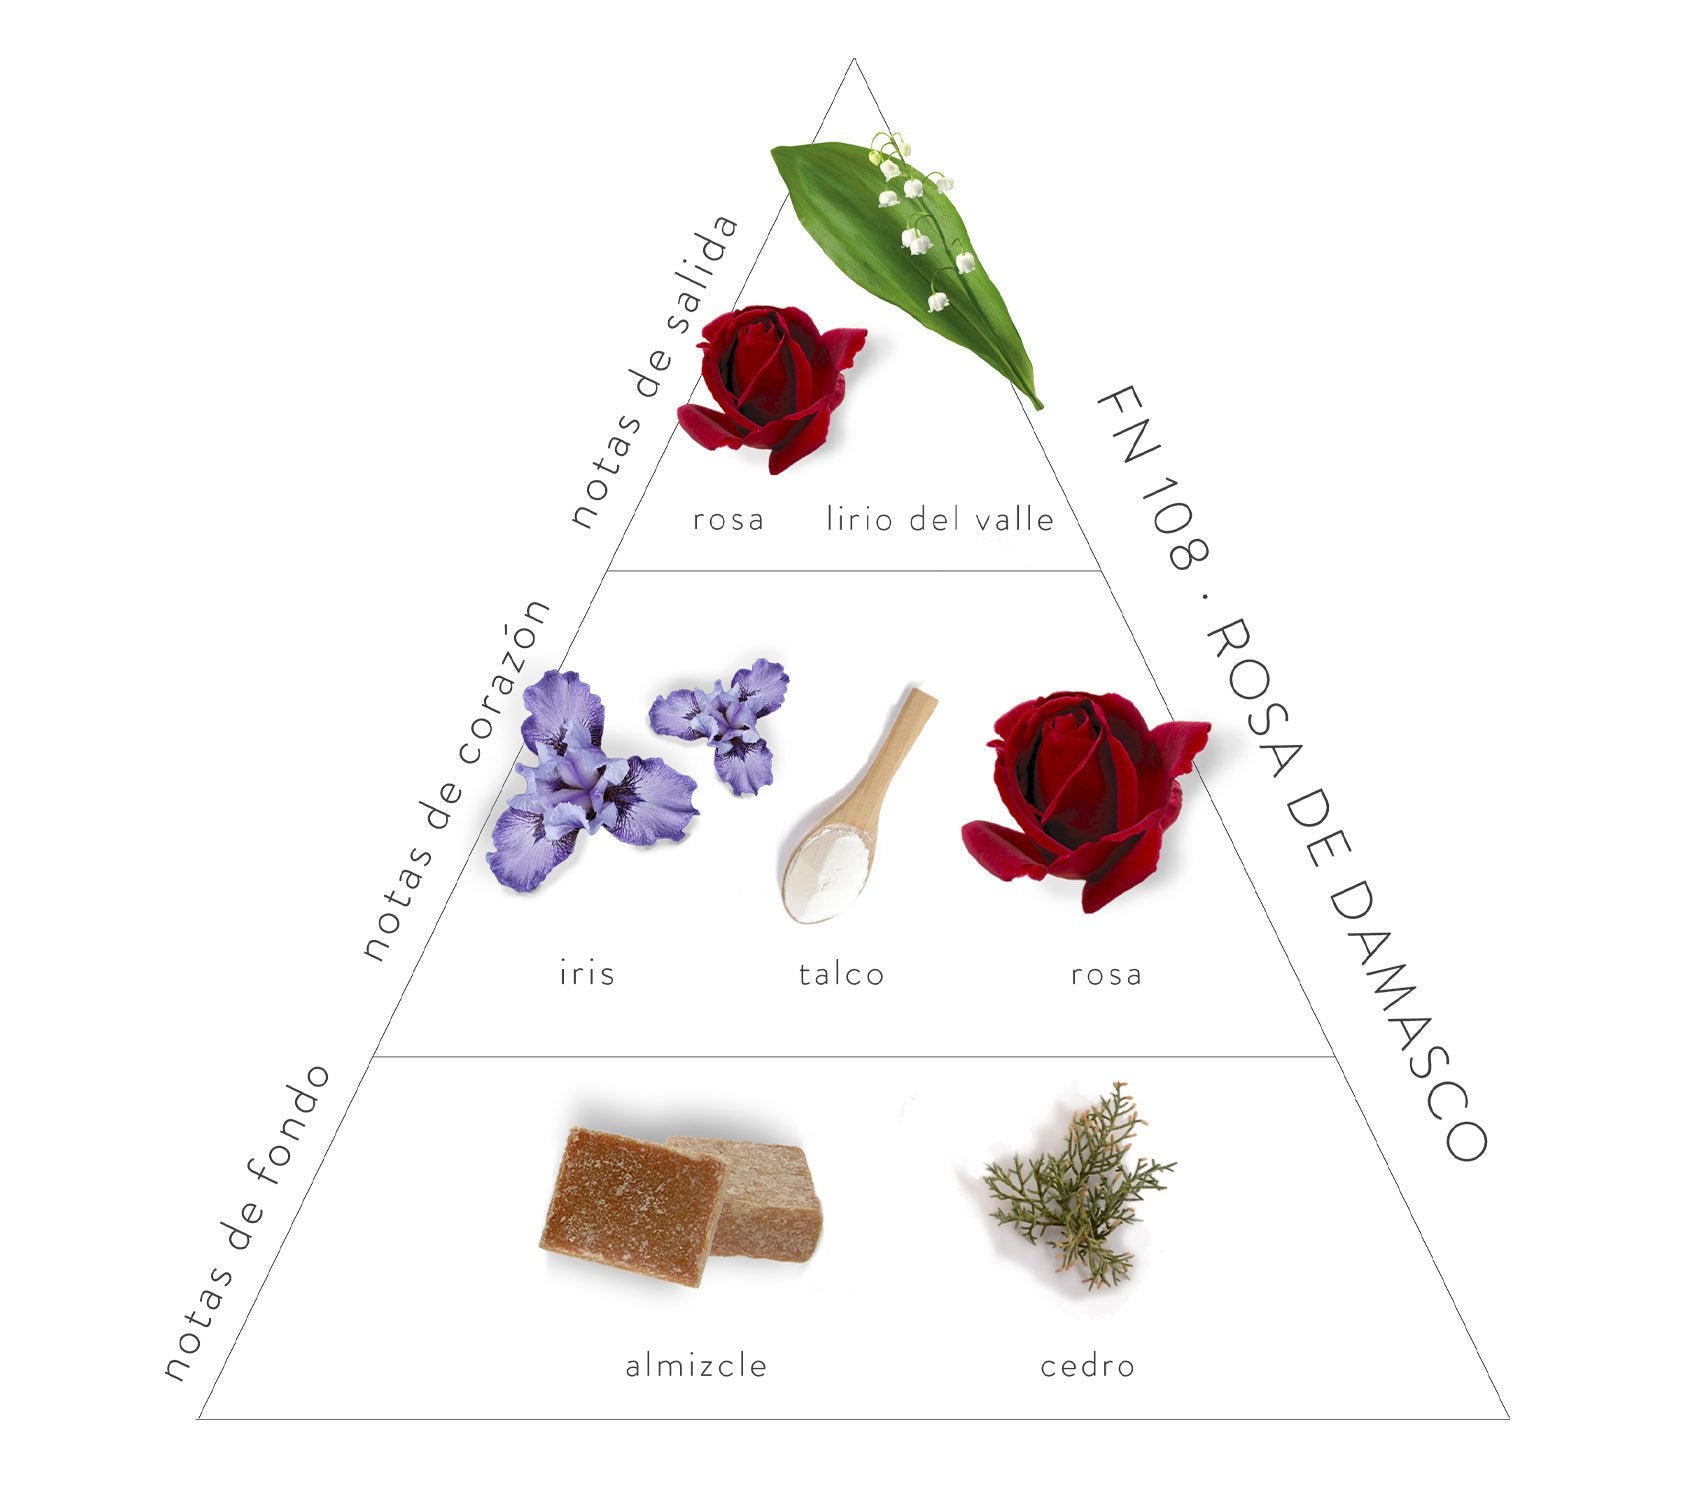 Pirámide Olfativa Rosa de Damasco: Notas de salida: rosa y lirio del valle. Notas de corazón: iris, talco y rosa. Notas de fondo: almizcle y cedro